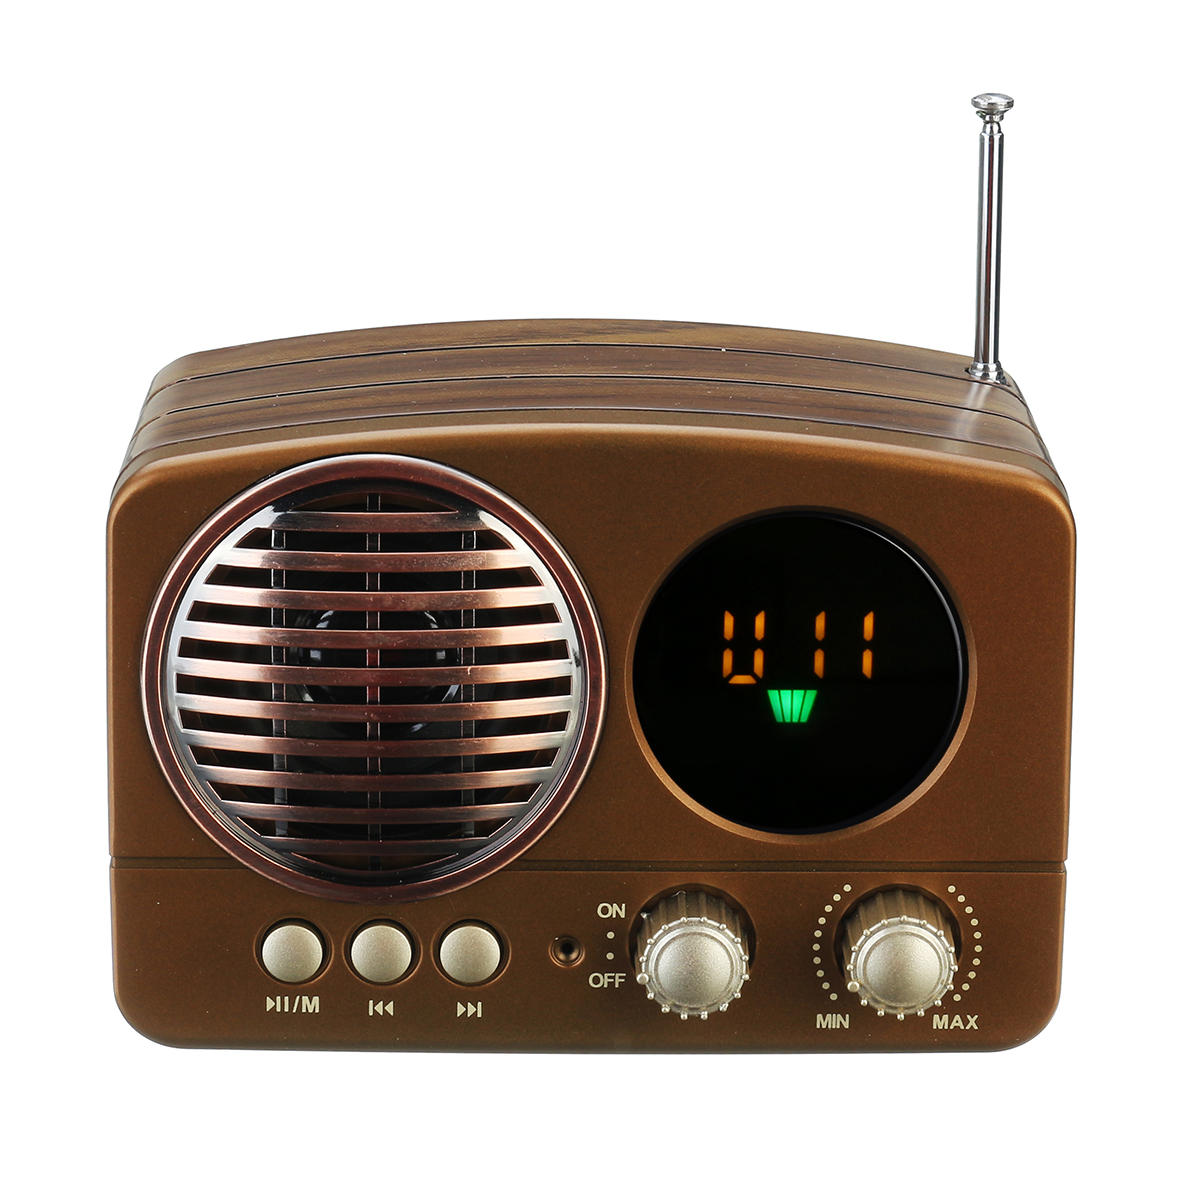 Беспроводное радио купить. Радиоприёмник Meier m-163bt. Радиоприемник Wireless Neier. Беспроводной радиовещание. Wireless Radio на батарейках.